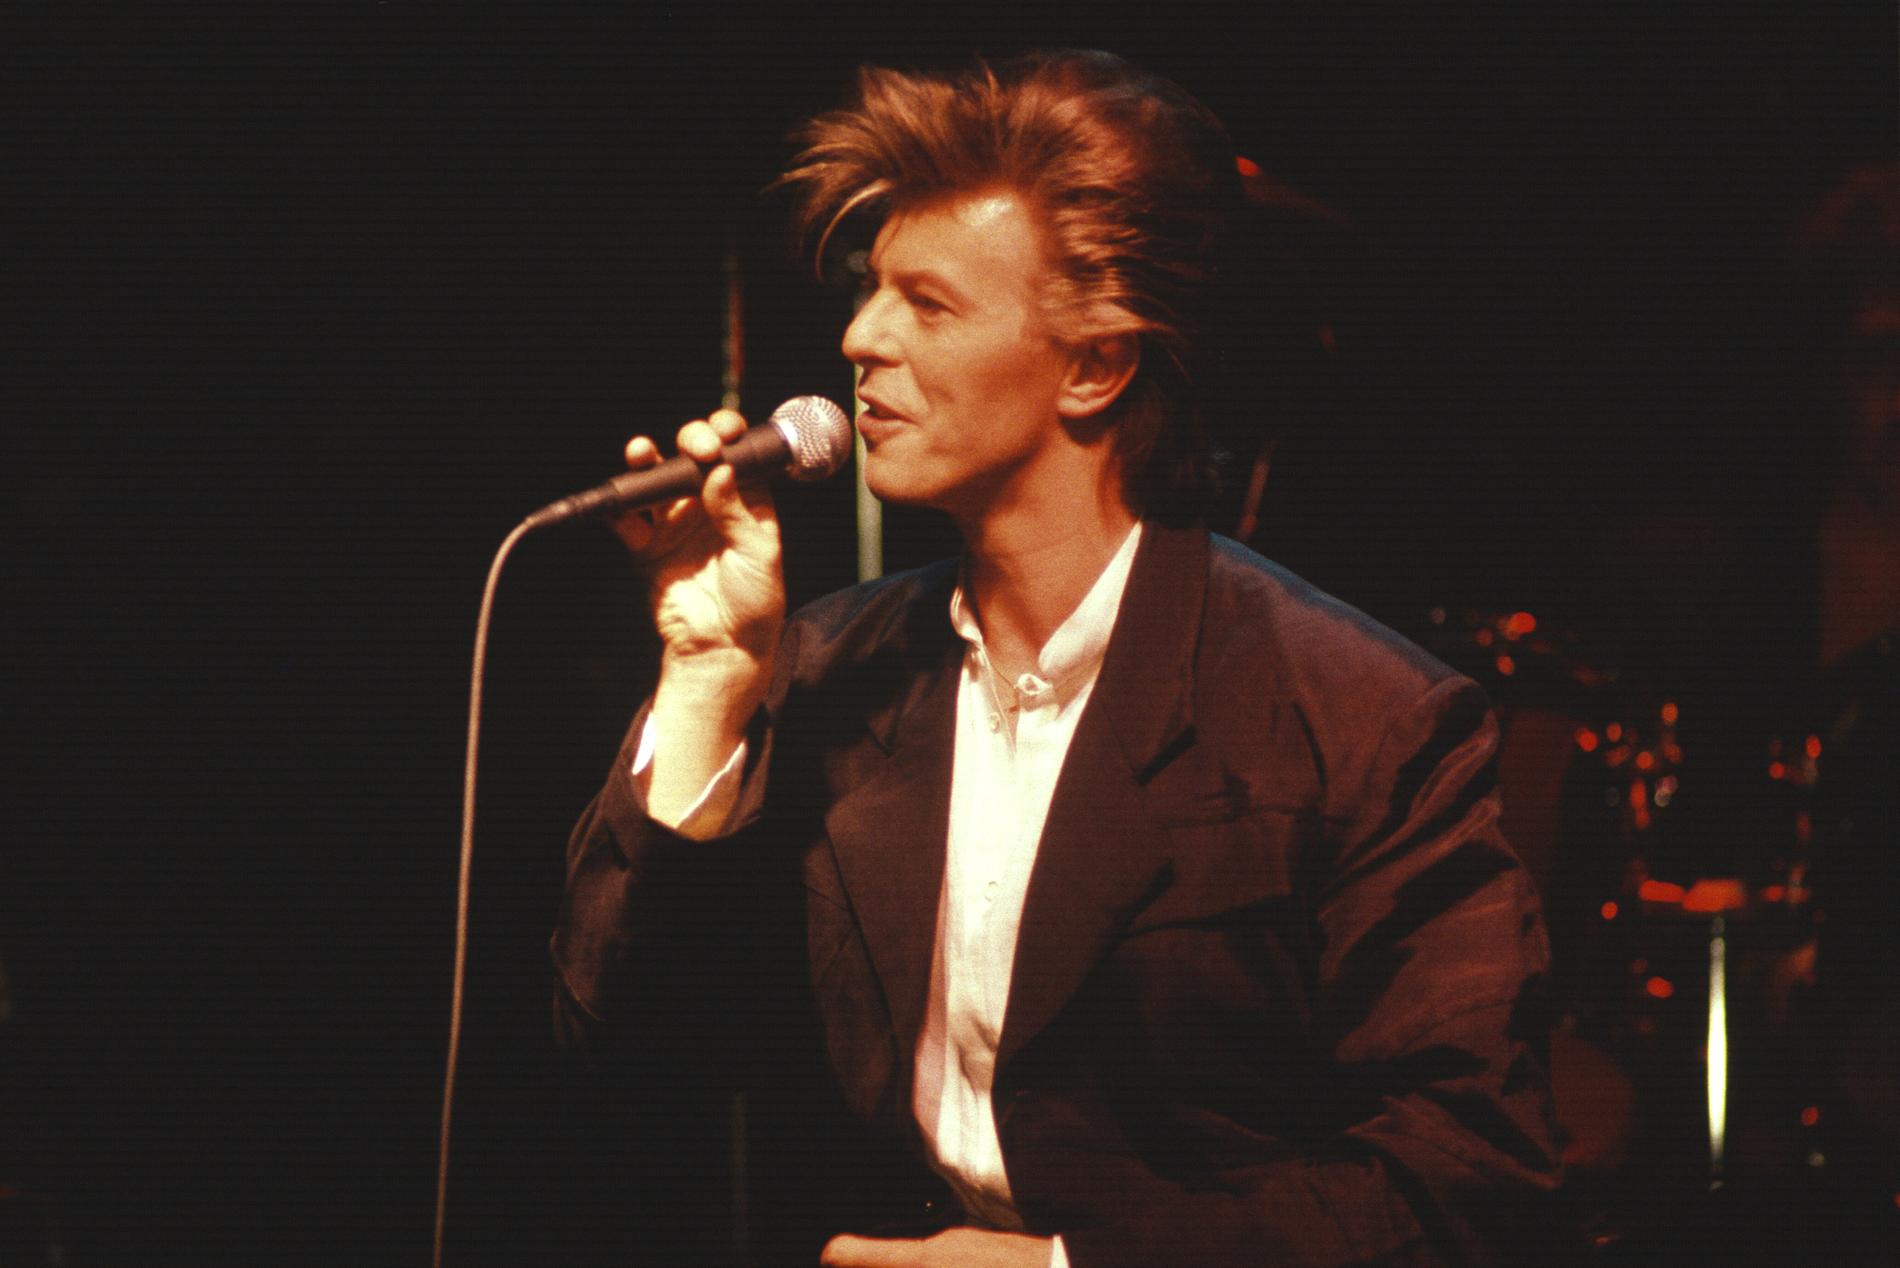 David Bowie håller kombinerad konsert och presskonferens för albumet ”Never let me down” på rockklubben Ritz i Stockholm 28 mars 1987.